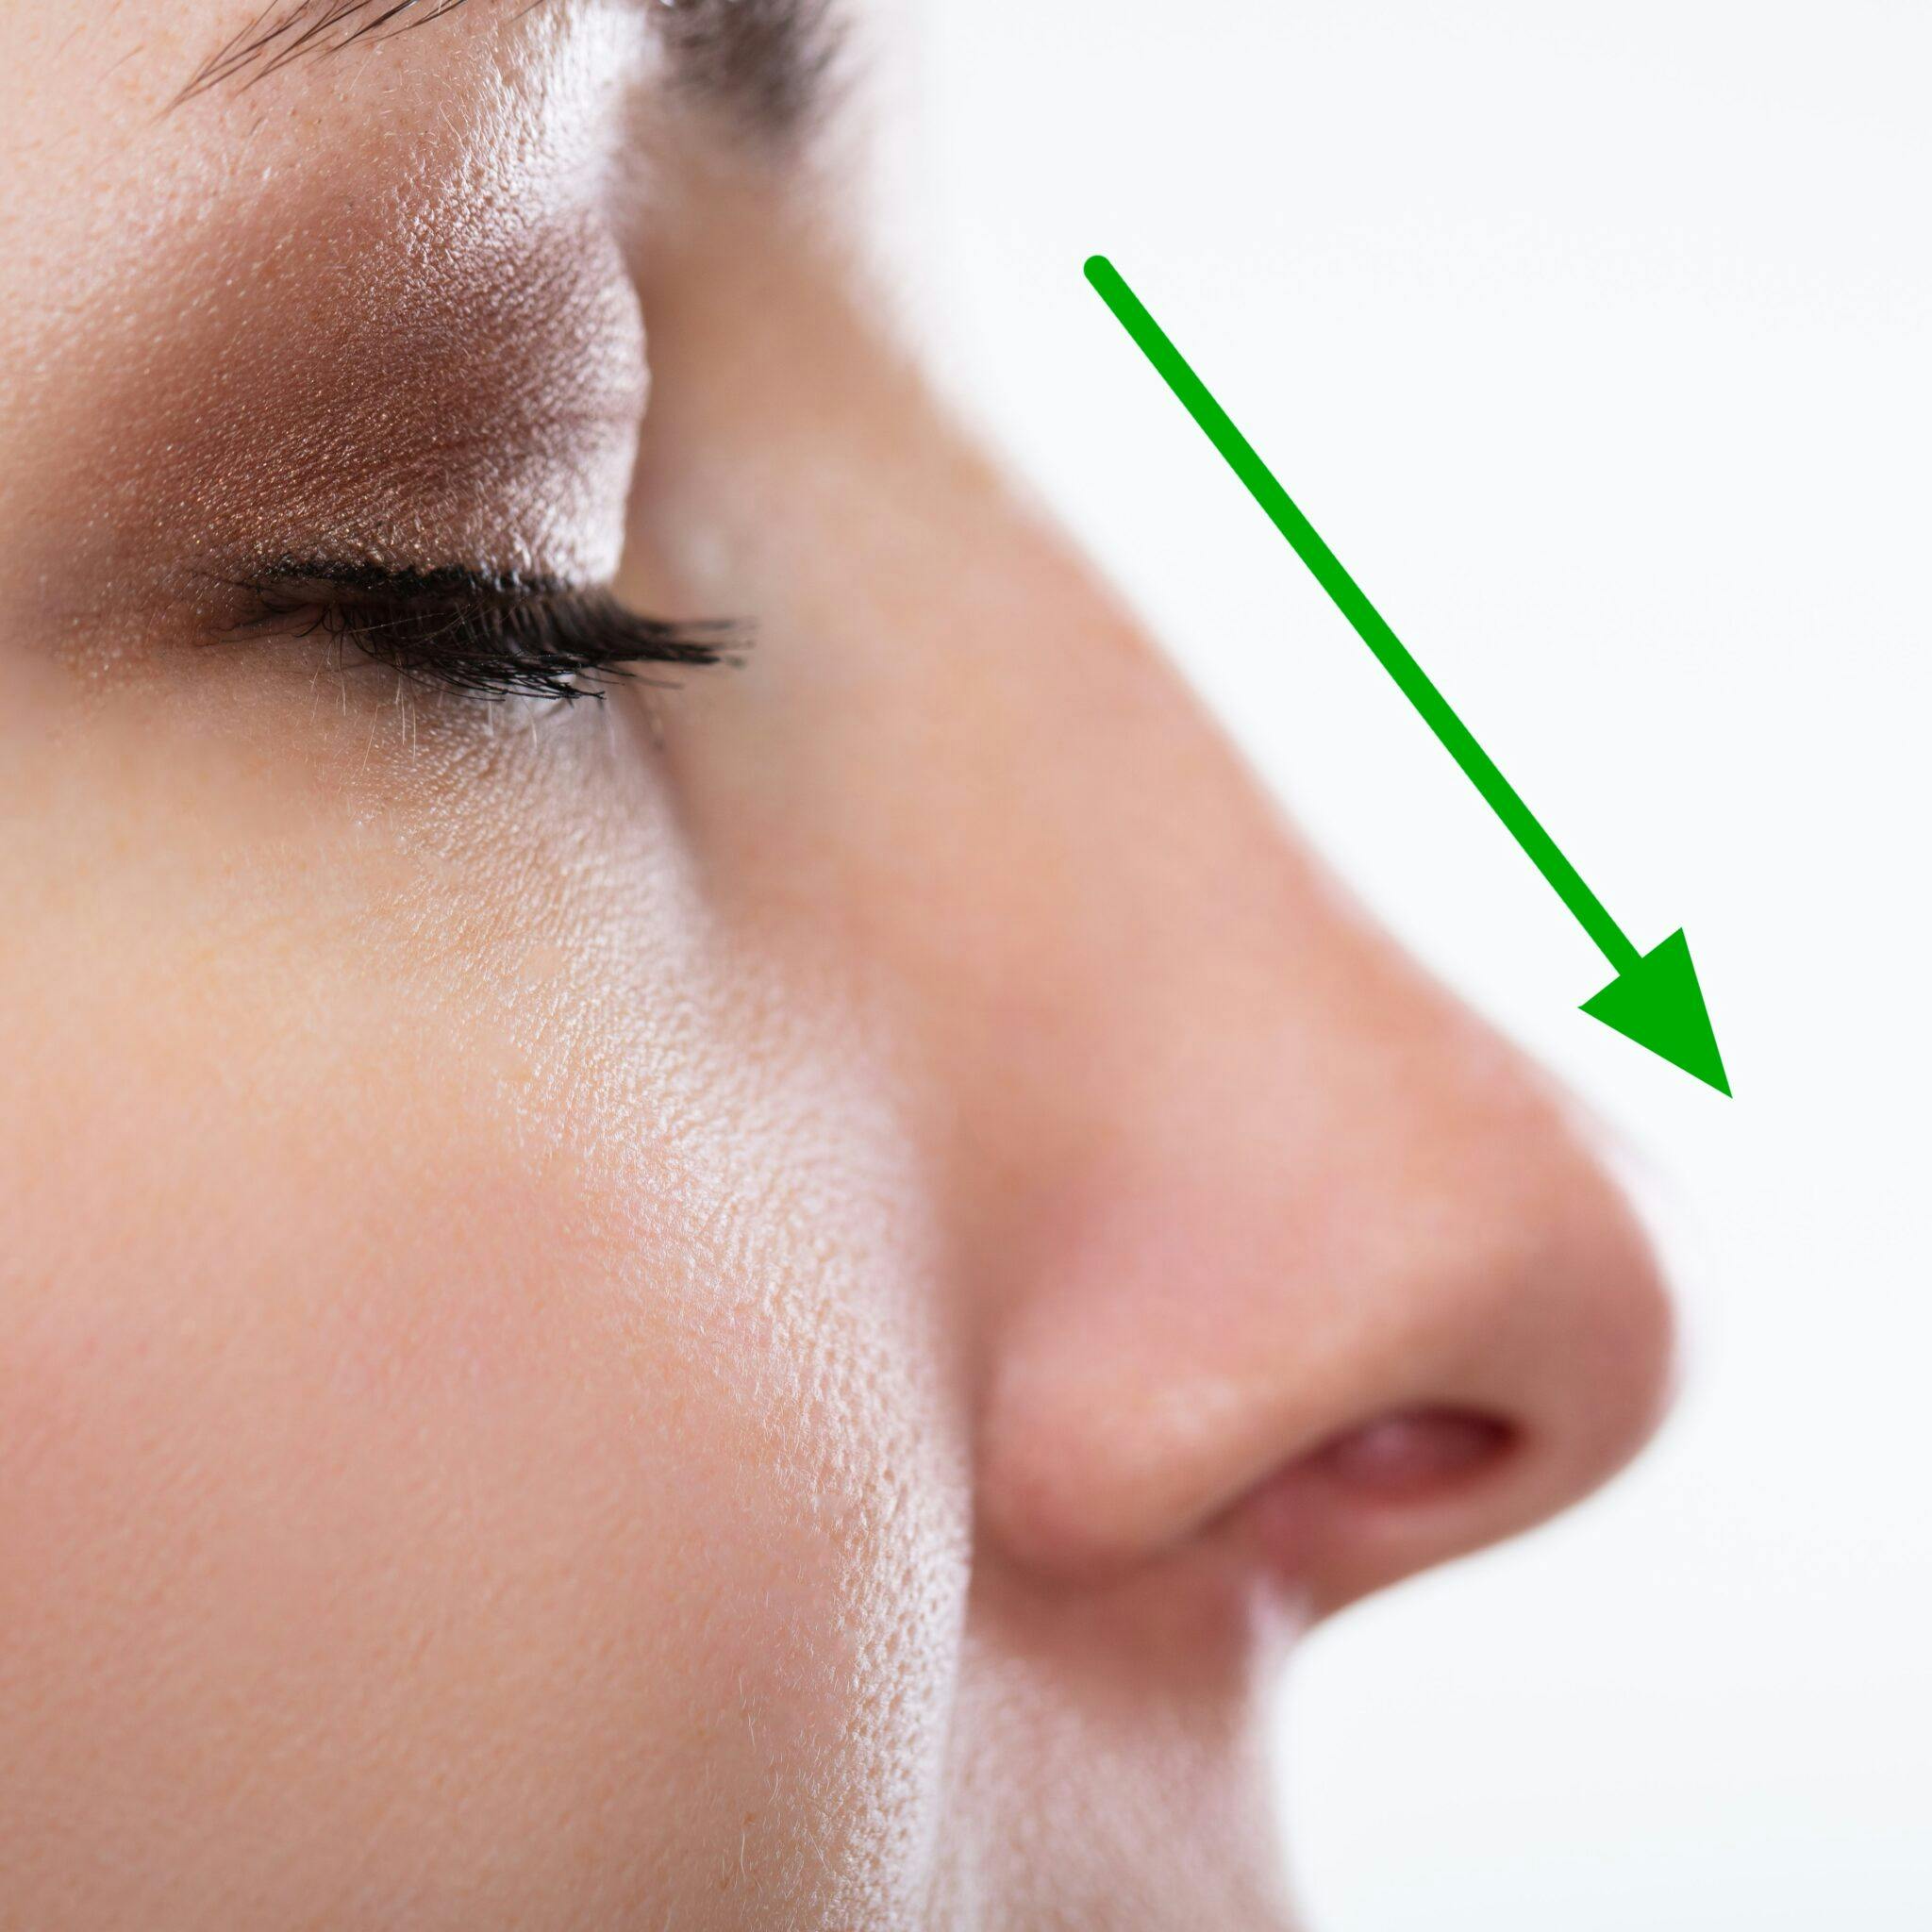 Come rimuovere la gobba dal naso: cosa devi sapere